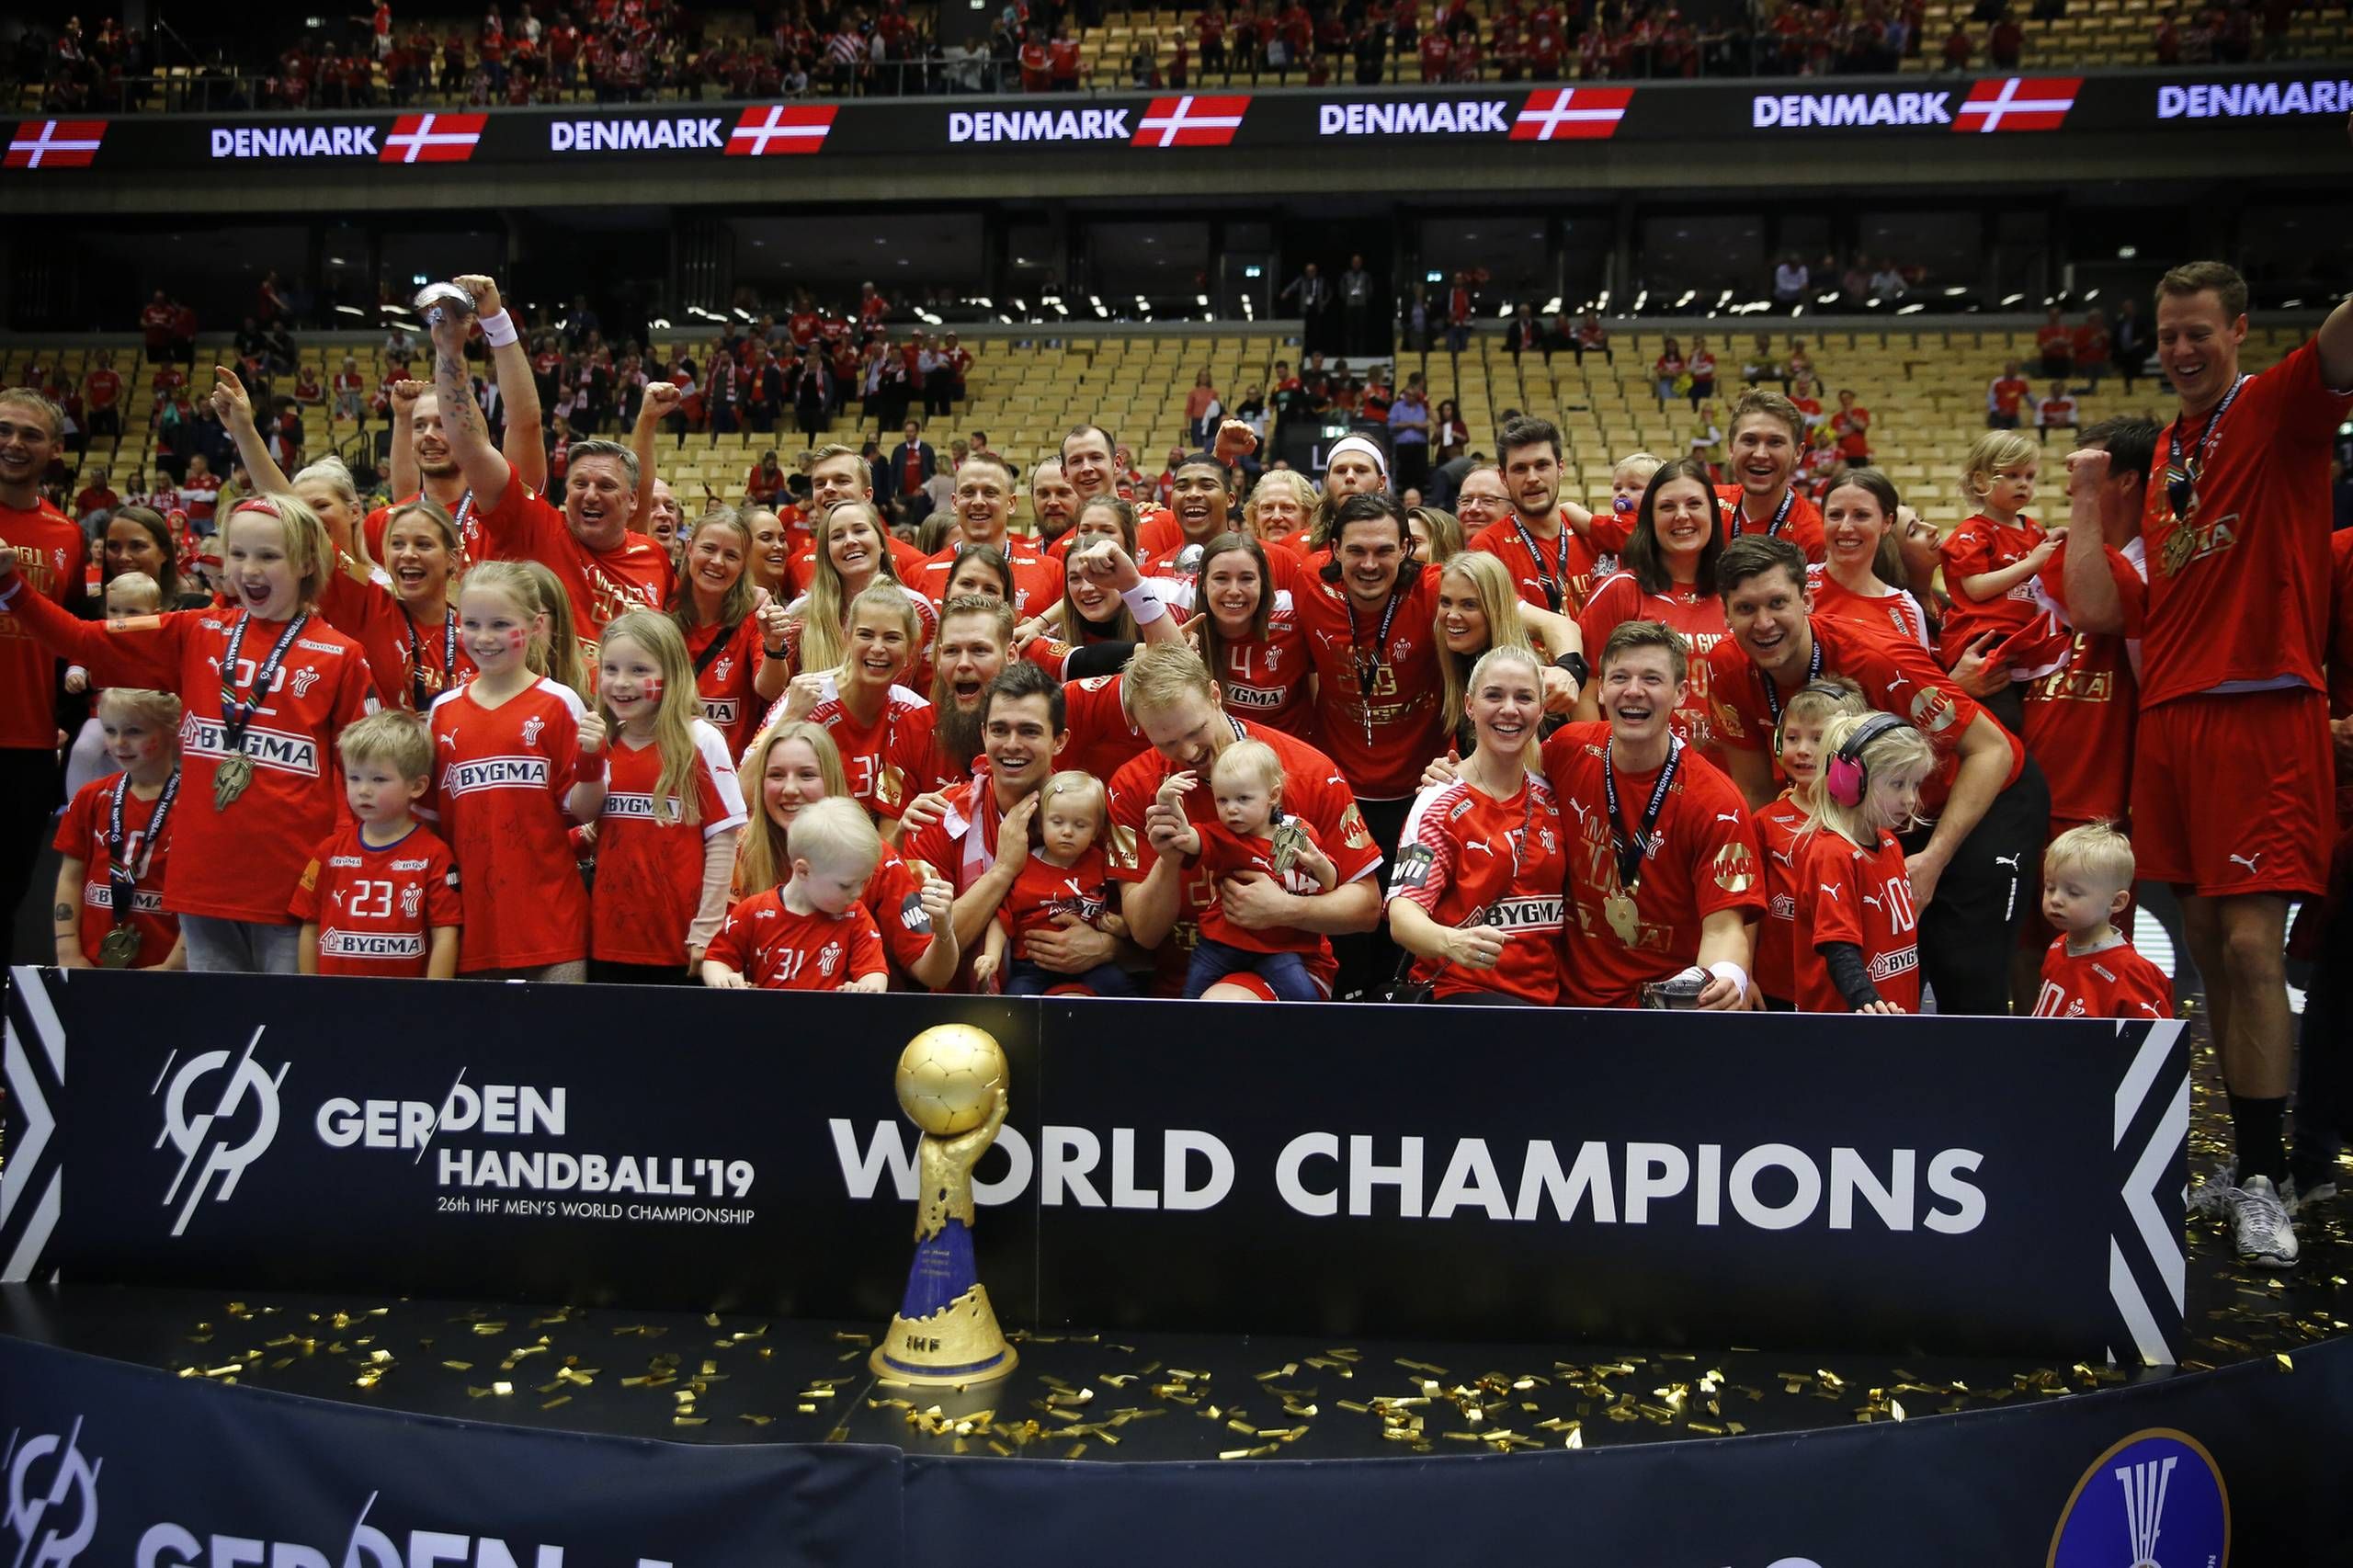 millioner danskere så håndboldherrernes VM-triumf